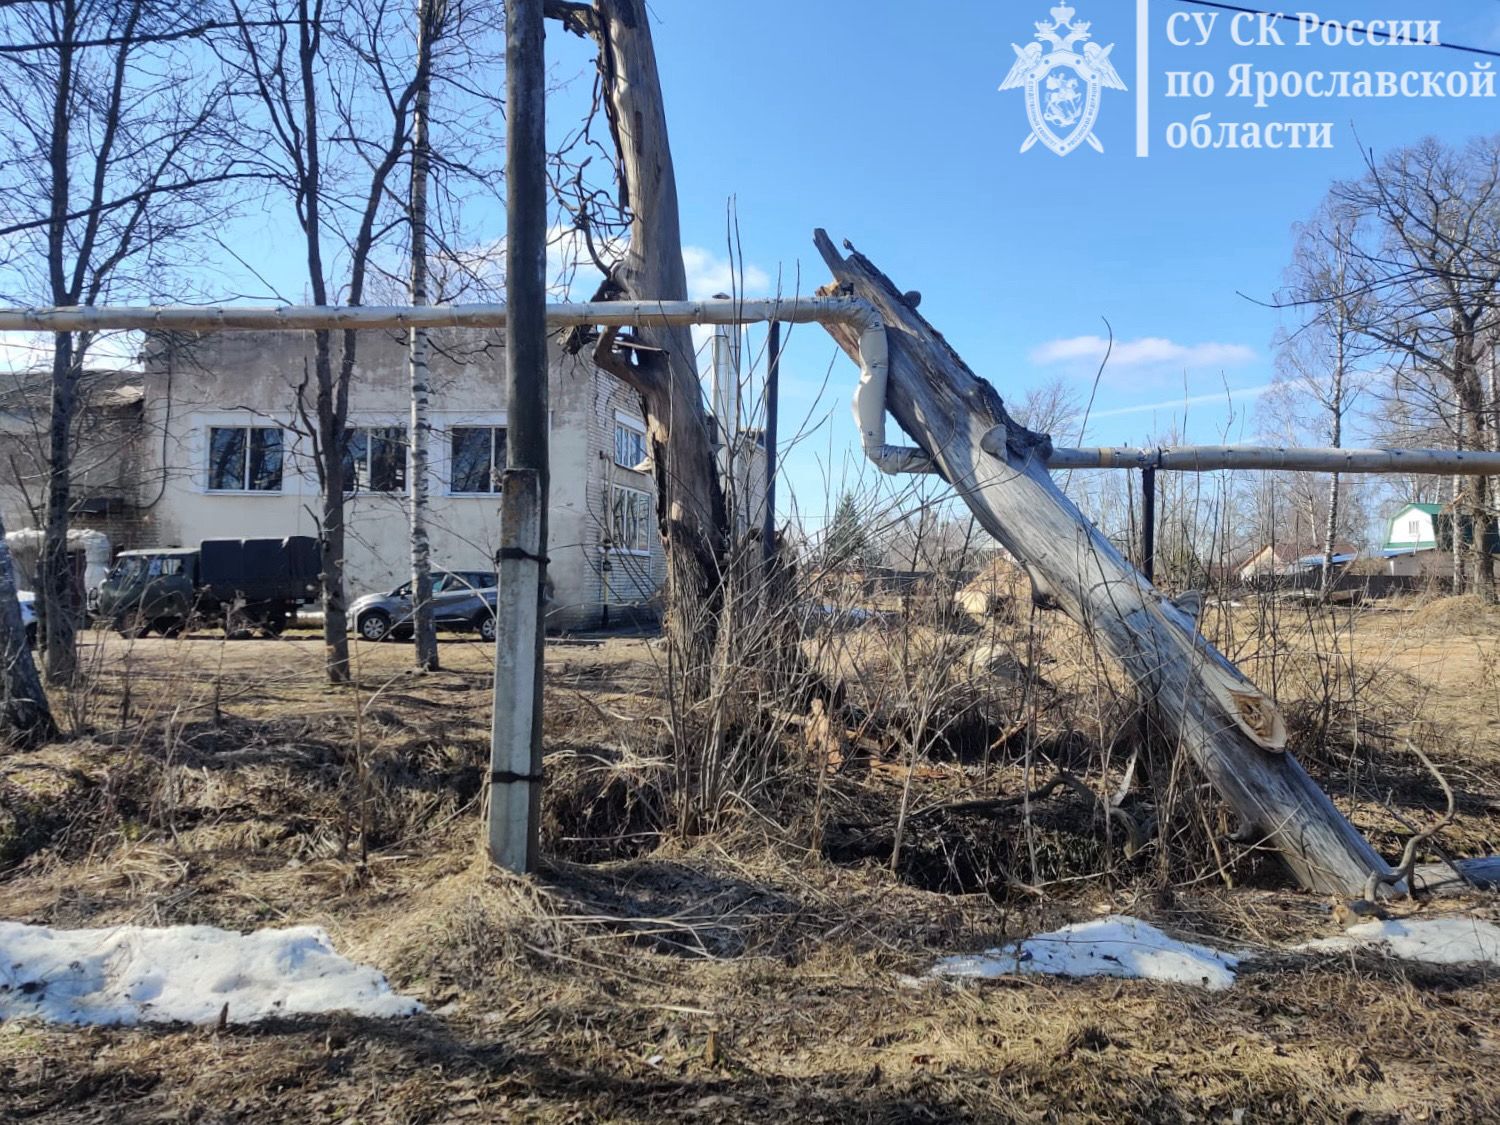 СК возбудил уголовное дело по факту падения дерева на подростка в Ярославской области